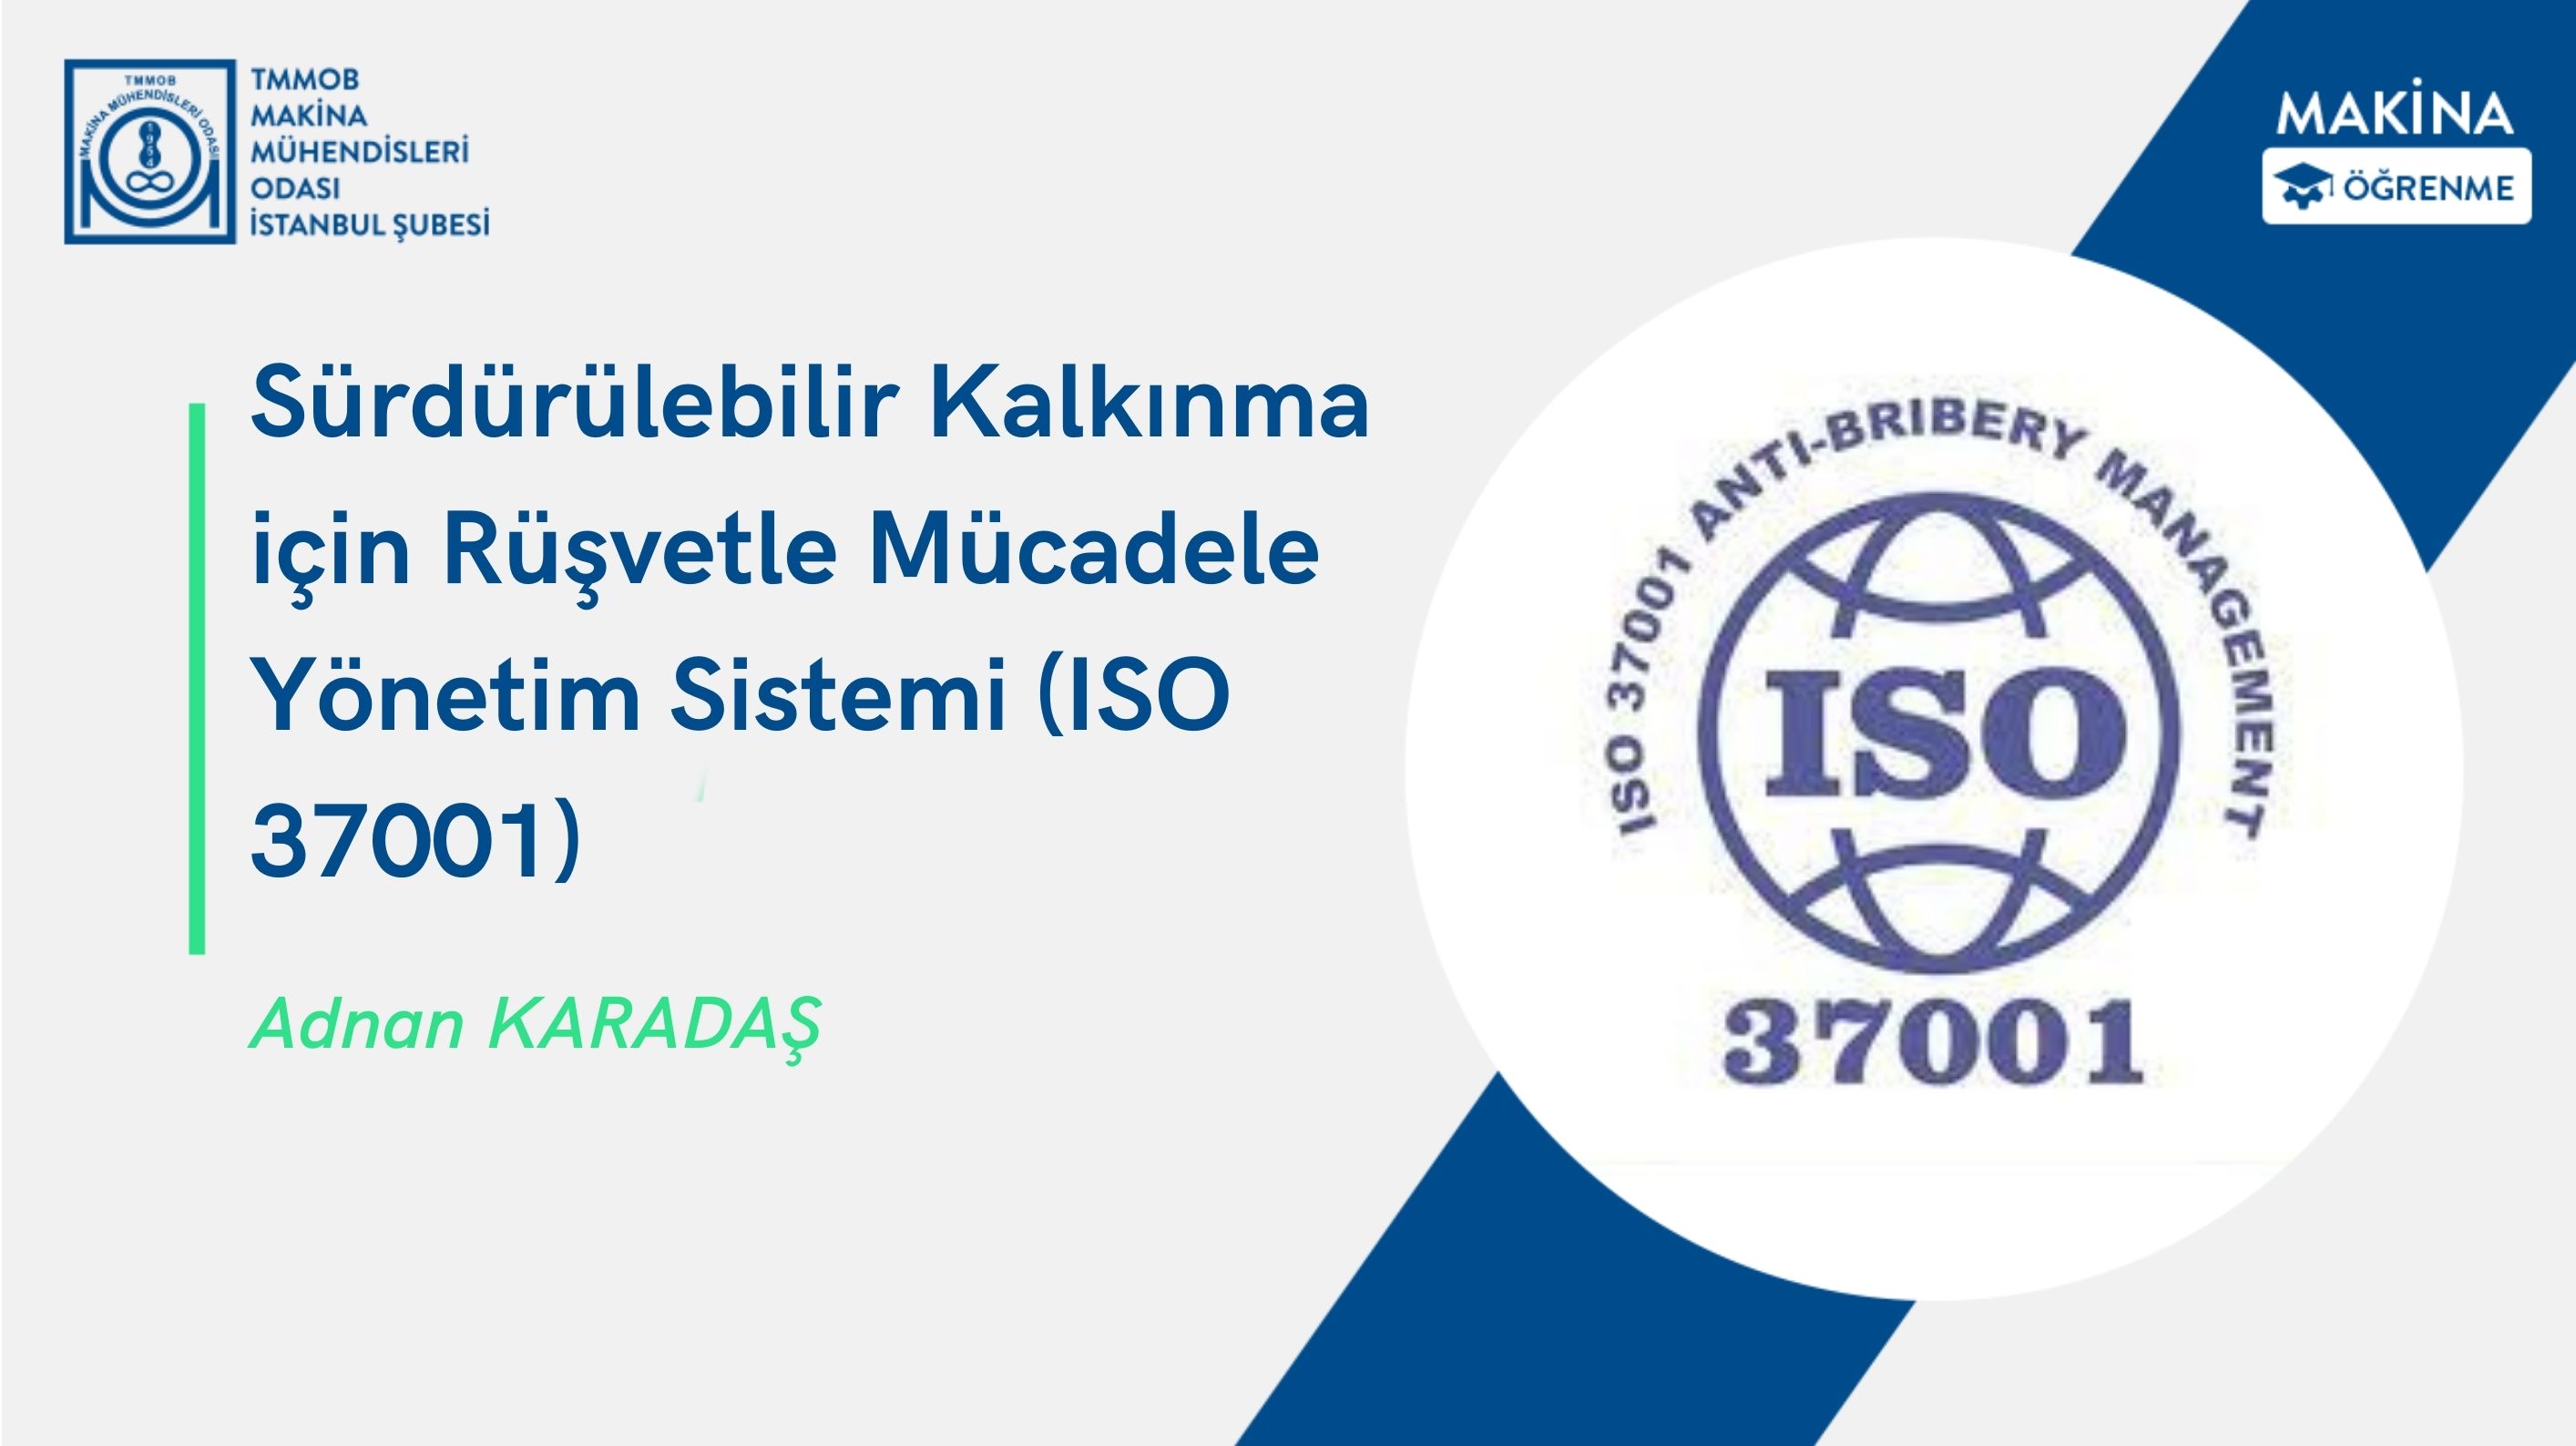 Sürdürülebilir Kalkınma için Rüşvetle Mücadele Yönetim Sistemi (ISO 37001)